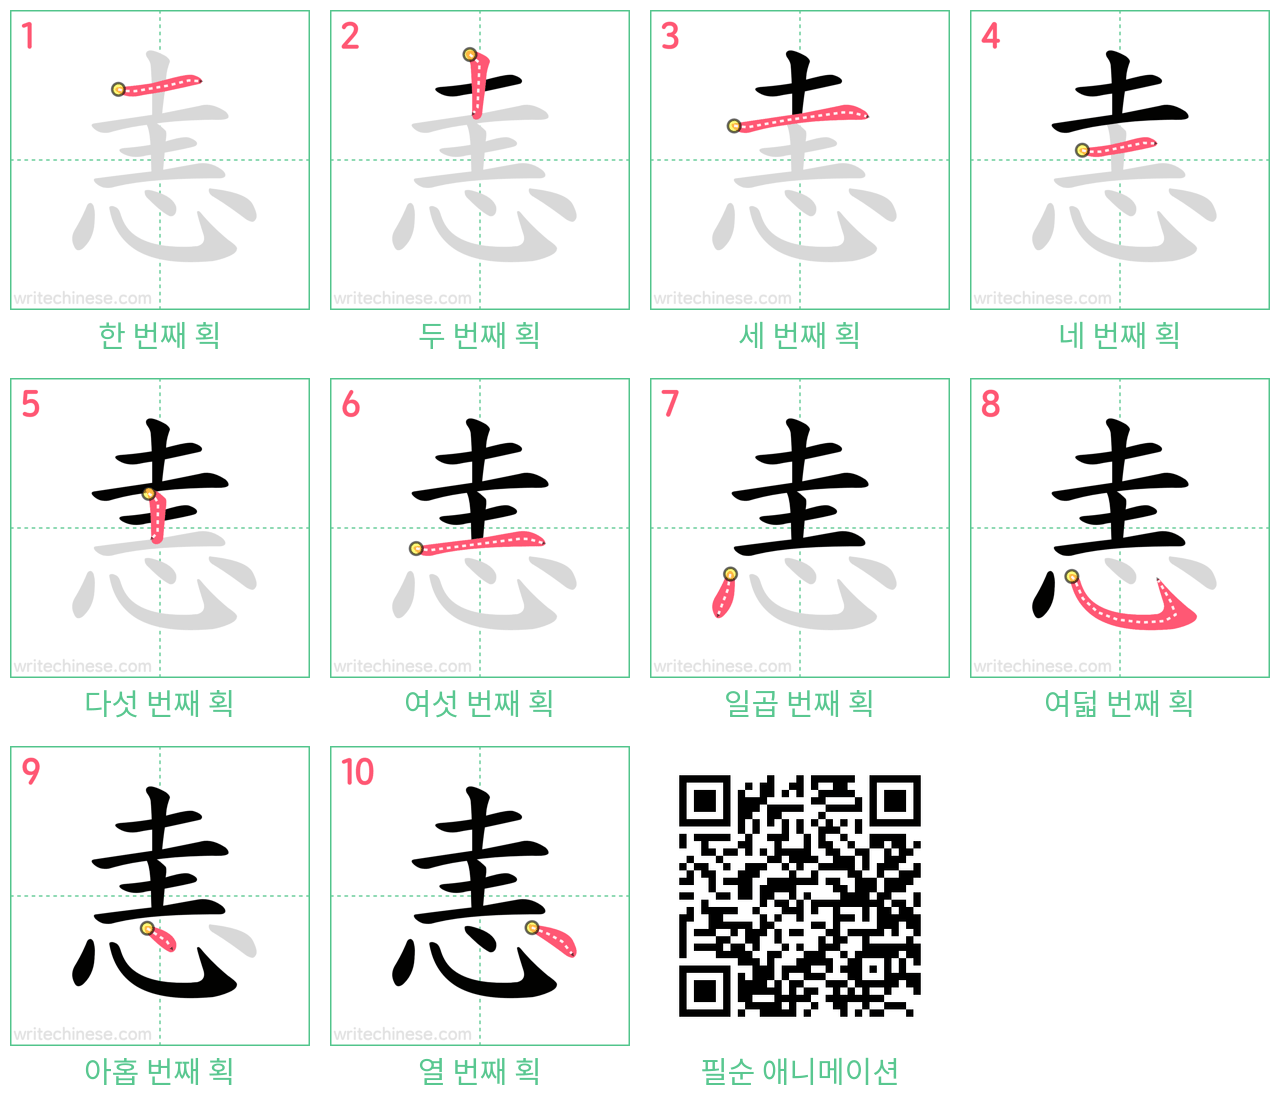 恚 step-by-step stroke order diagrams